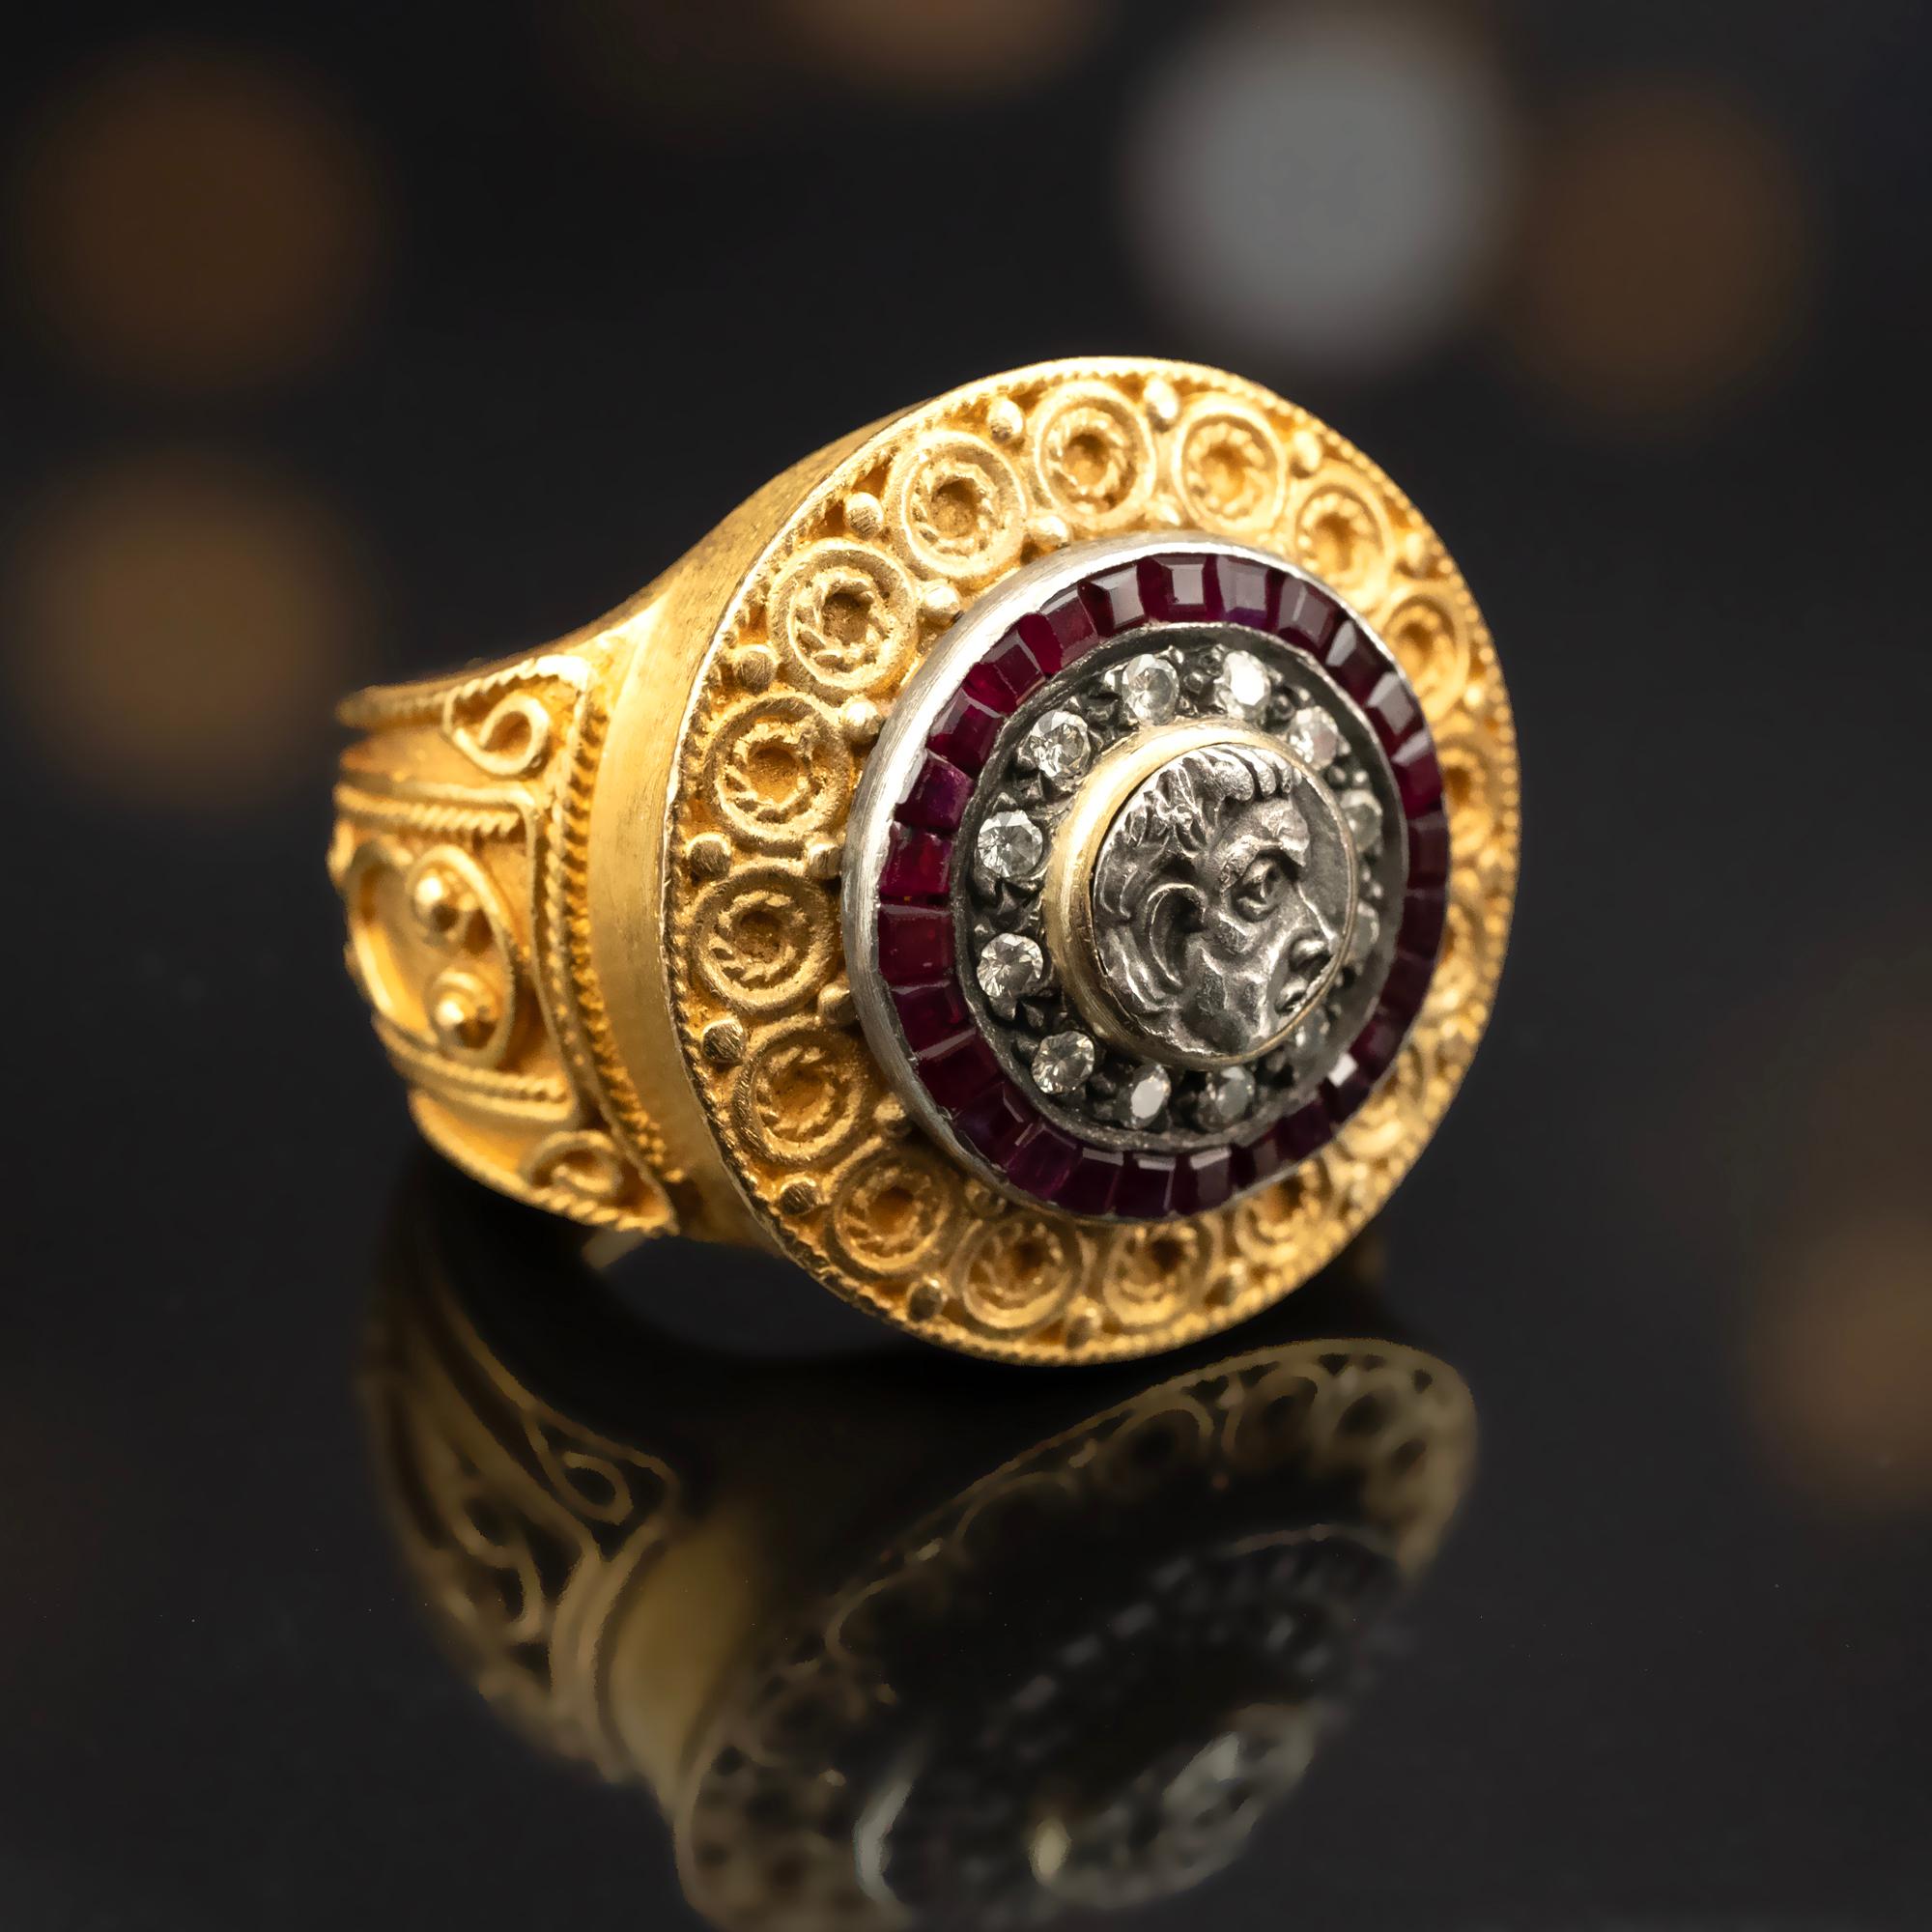 Réalisée à la main en or 22 carats, cette bague de style byzantin affiche un poids impressionnant de 27 grammes, ce qui confère à votre ensemble un aspect substantiel. Une partie d'une pièce de monnaie ancienne, sertie d'argent, occupe le devant de